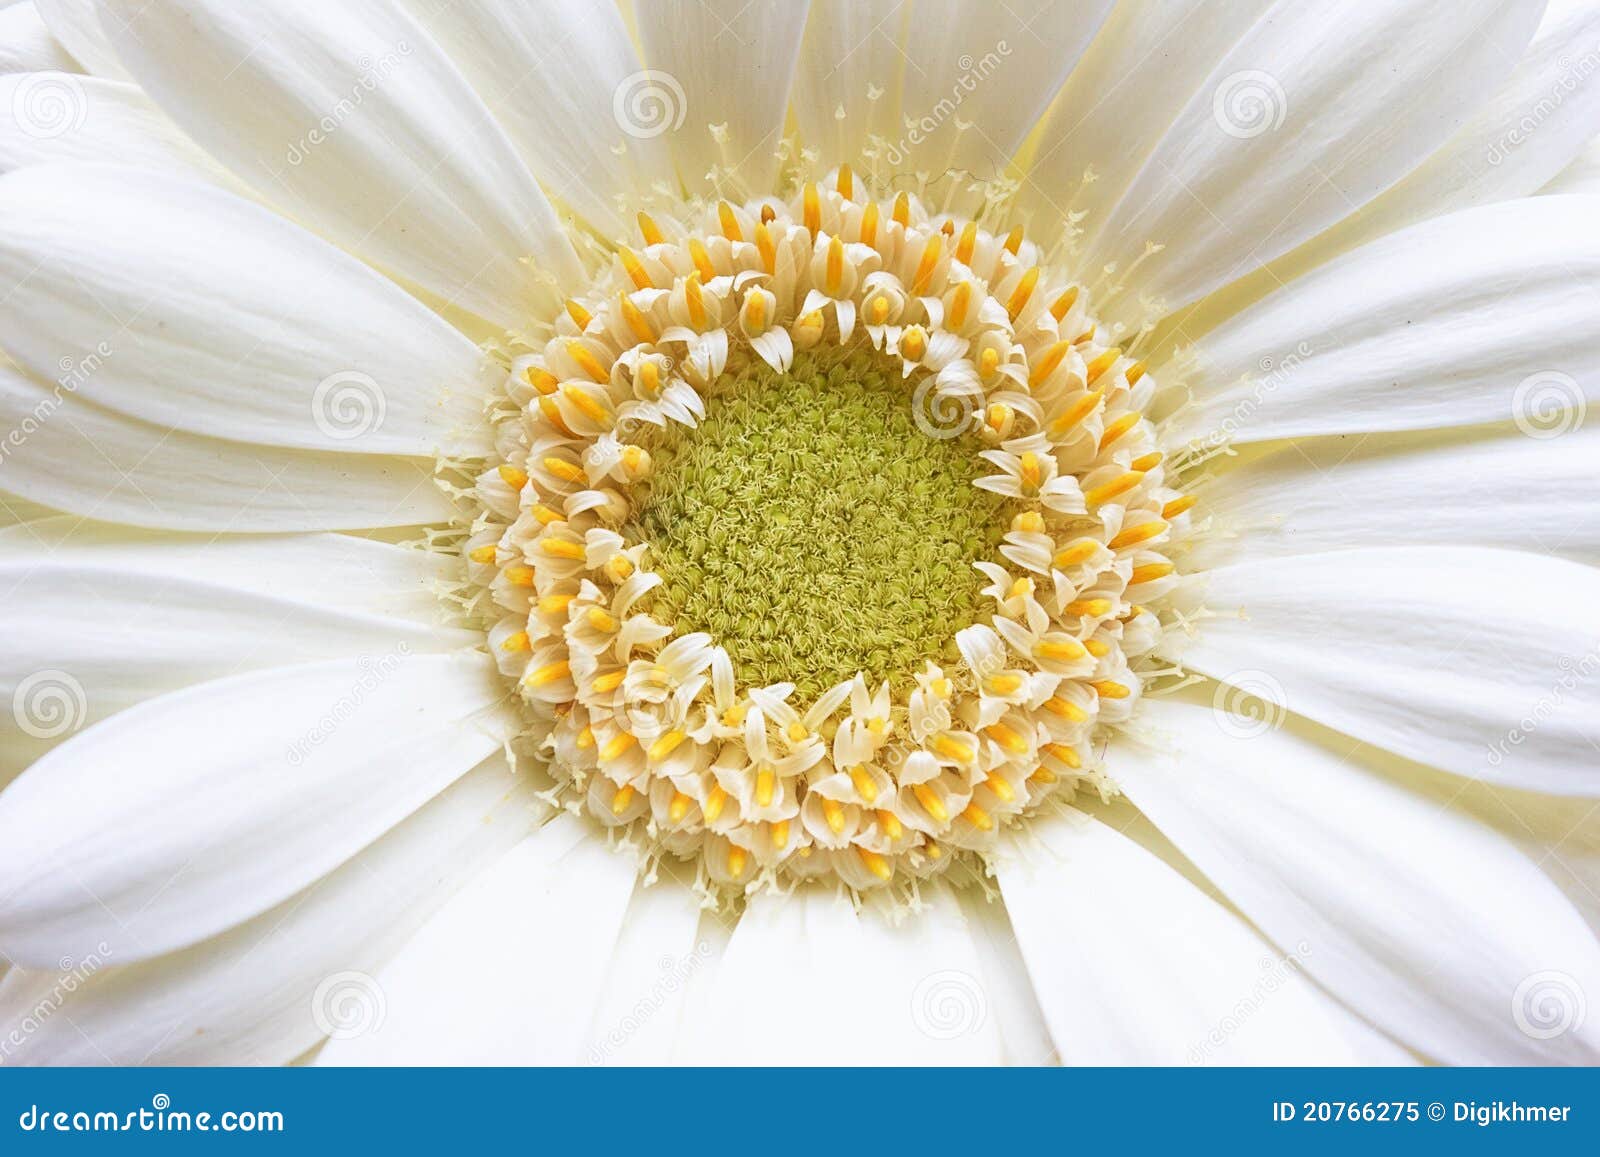 gerbera yellow white daisy flower